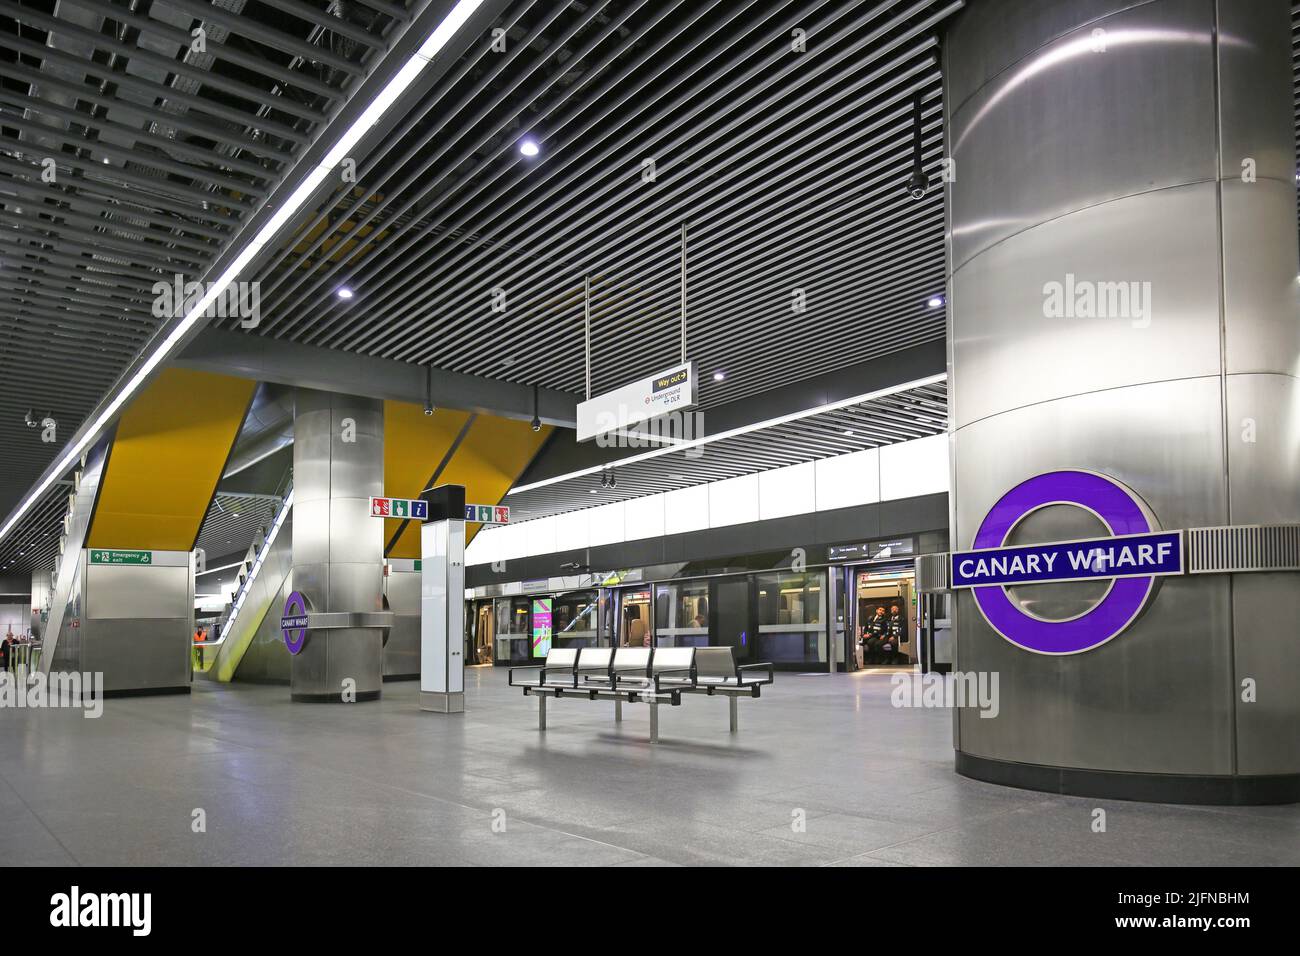 Londres, Reino Unido. Estación Canary Wharf en la recién inaugurada red de metro Elizabeth Line (Crossrail). Nivel de plataforma, muestra trenes y escaleras mecánicas. Foto de stock